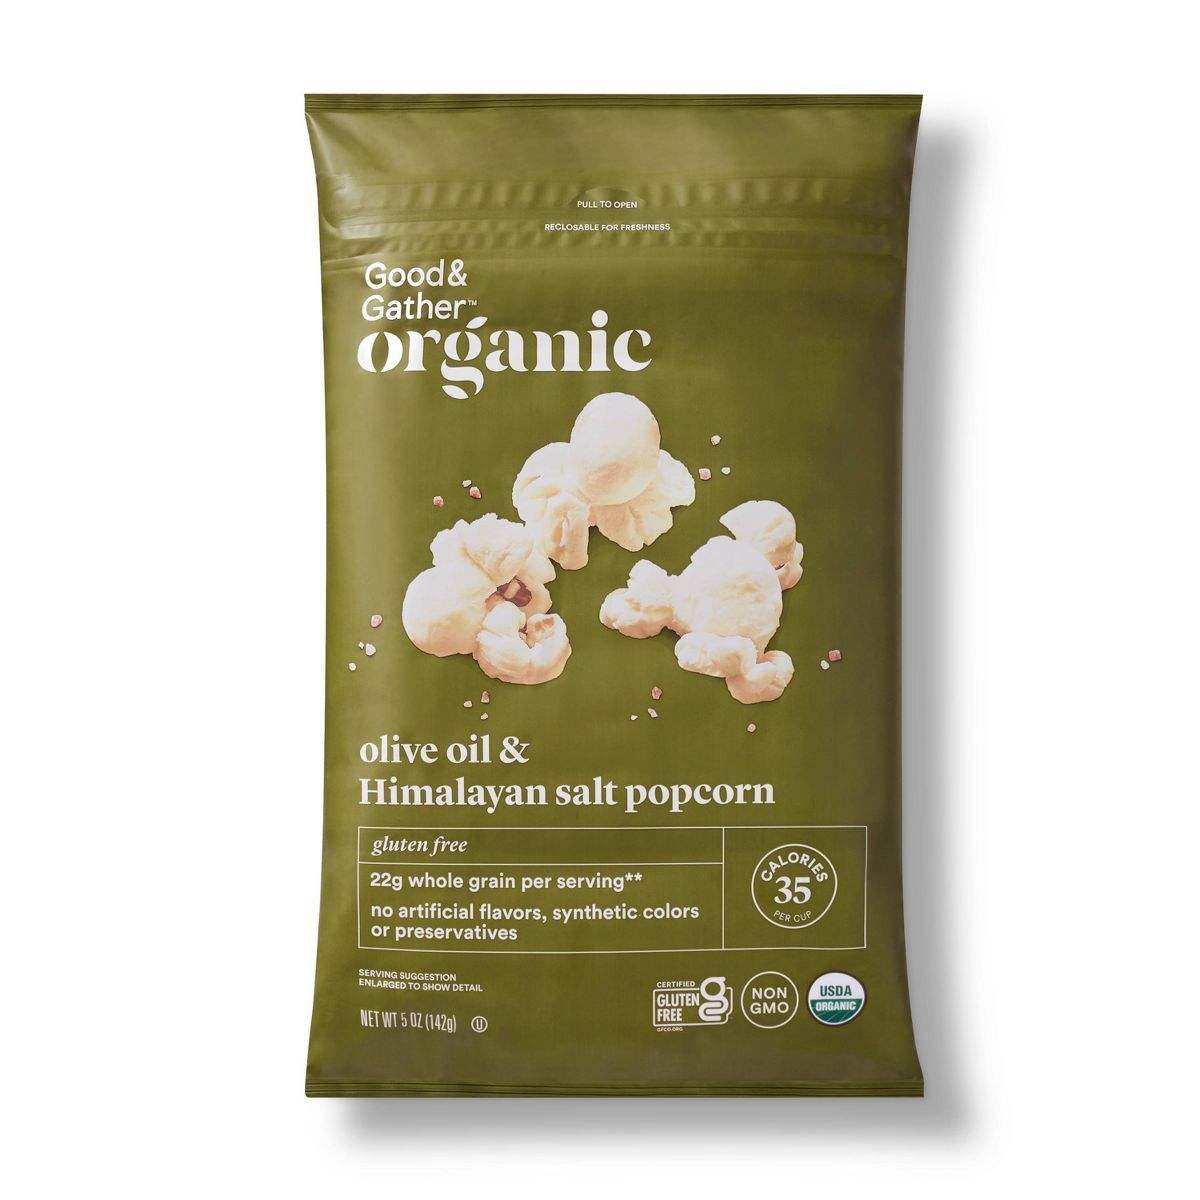 Organic Olive Oil & Himalayan Salt Popcorn - Good & Gather™ | Target